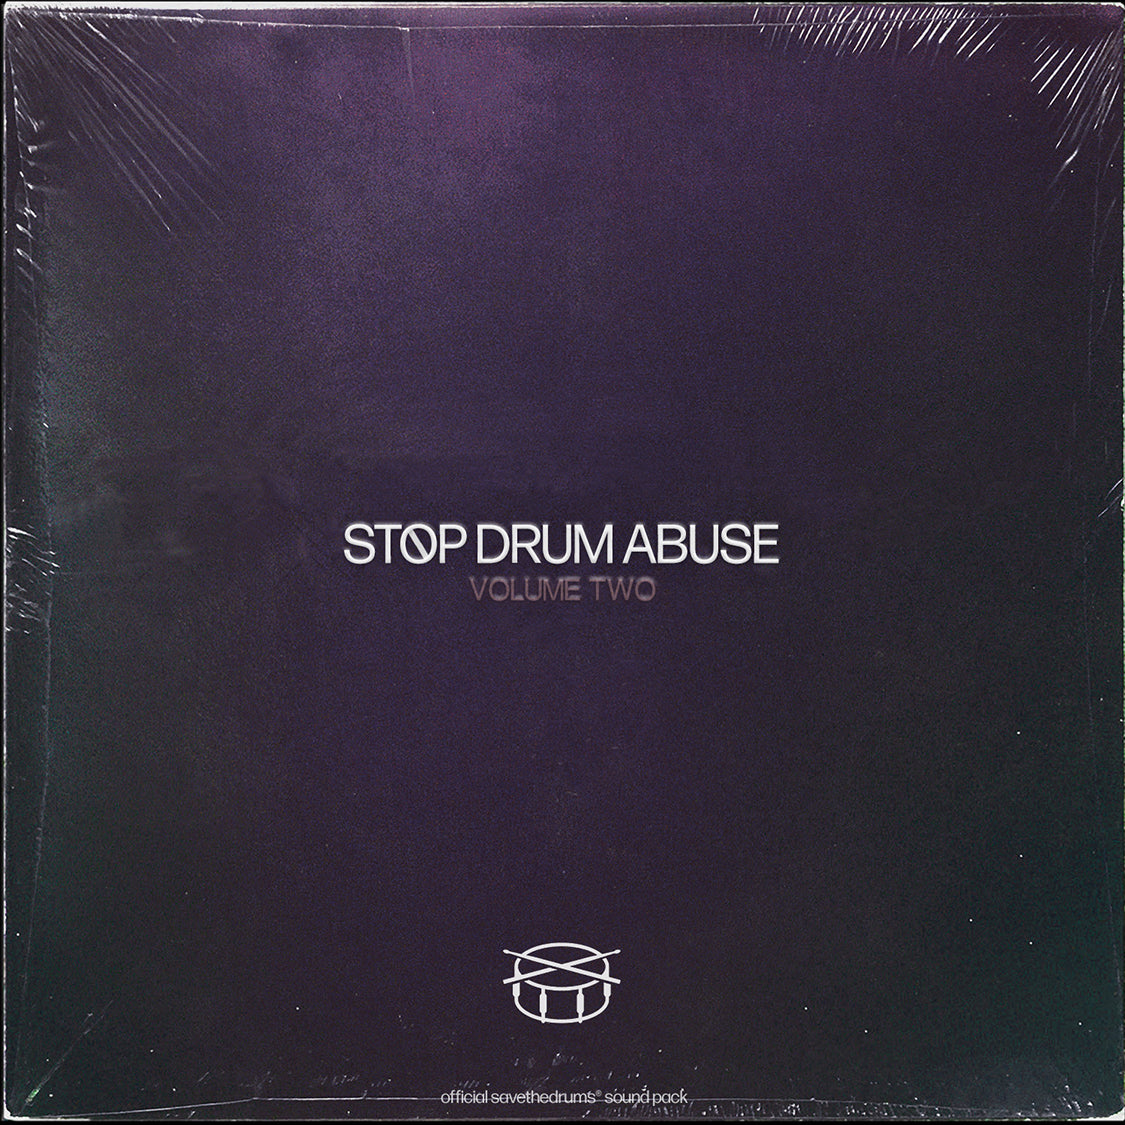 STOP DRUM ABUSE VOL. 2 (Drum Loops)